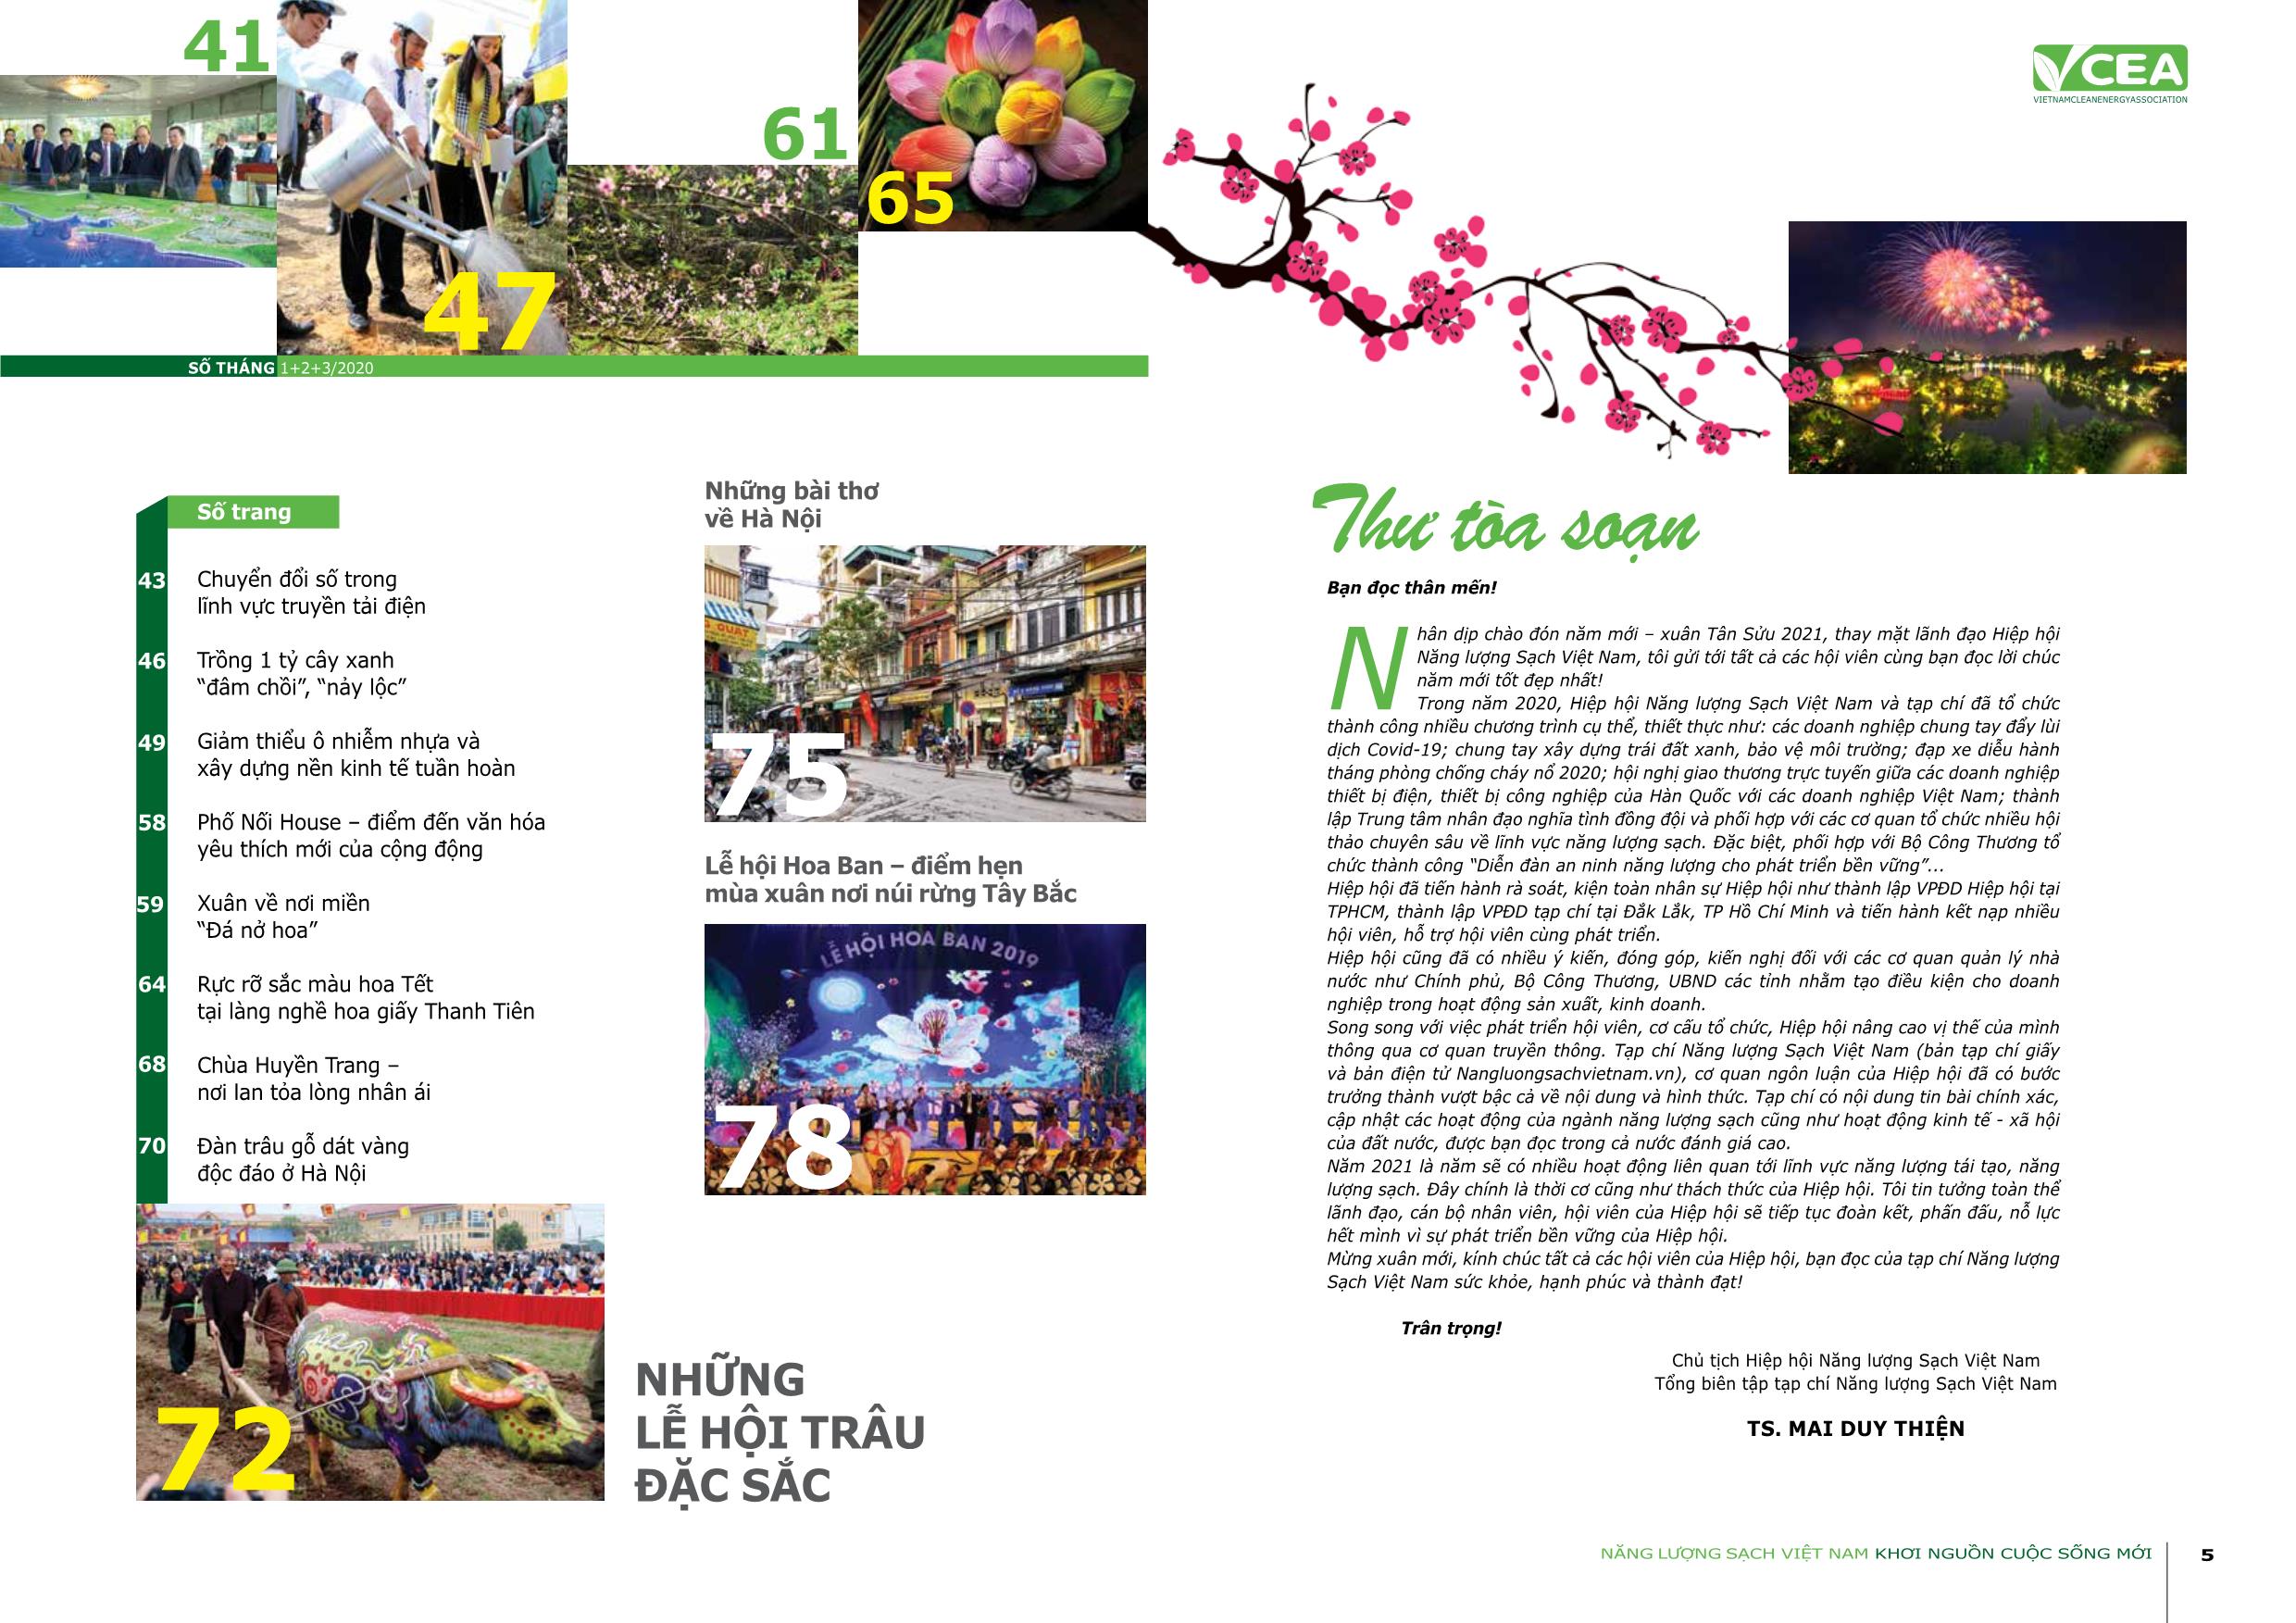 Tạp chí Năng lượng sạch Việt Nam - Số 47 - Tháng 1+2+3/2021 trang 3